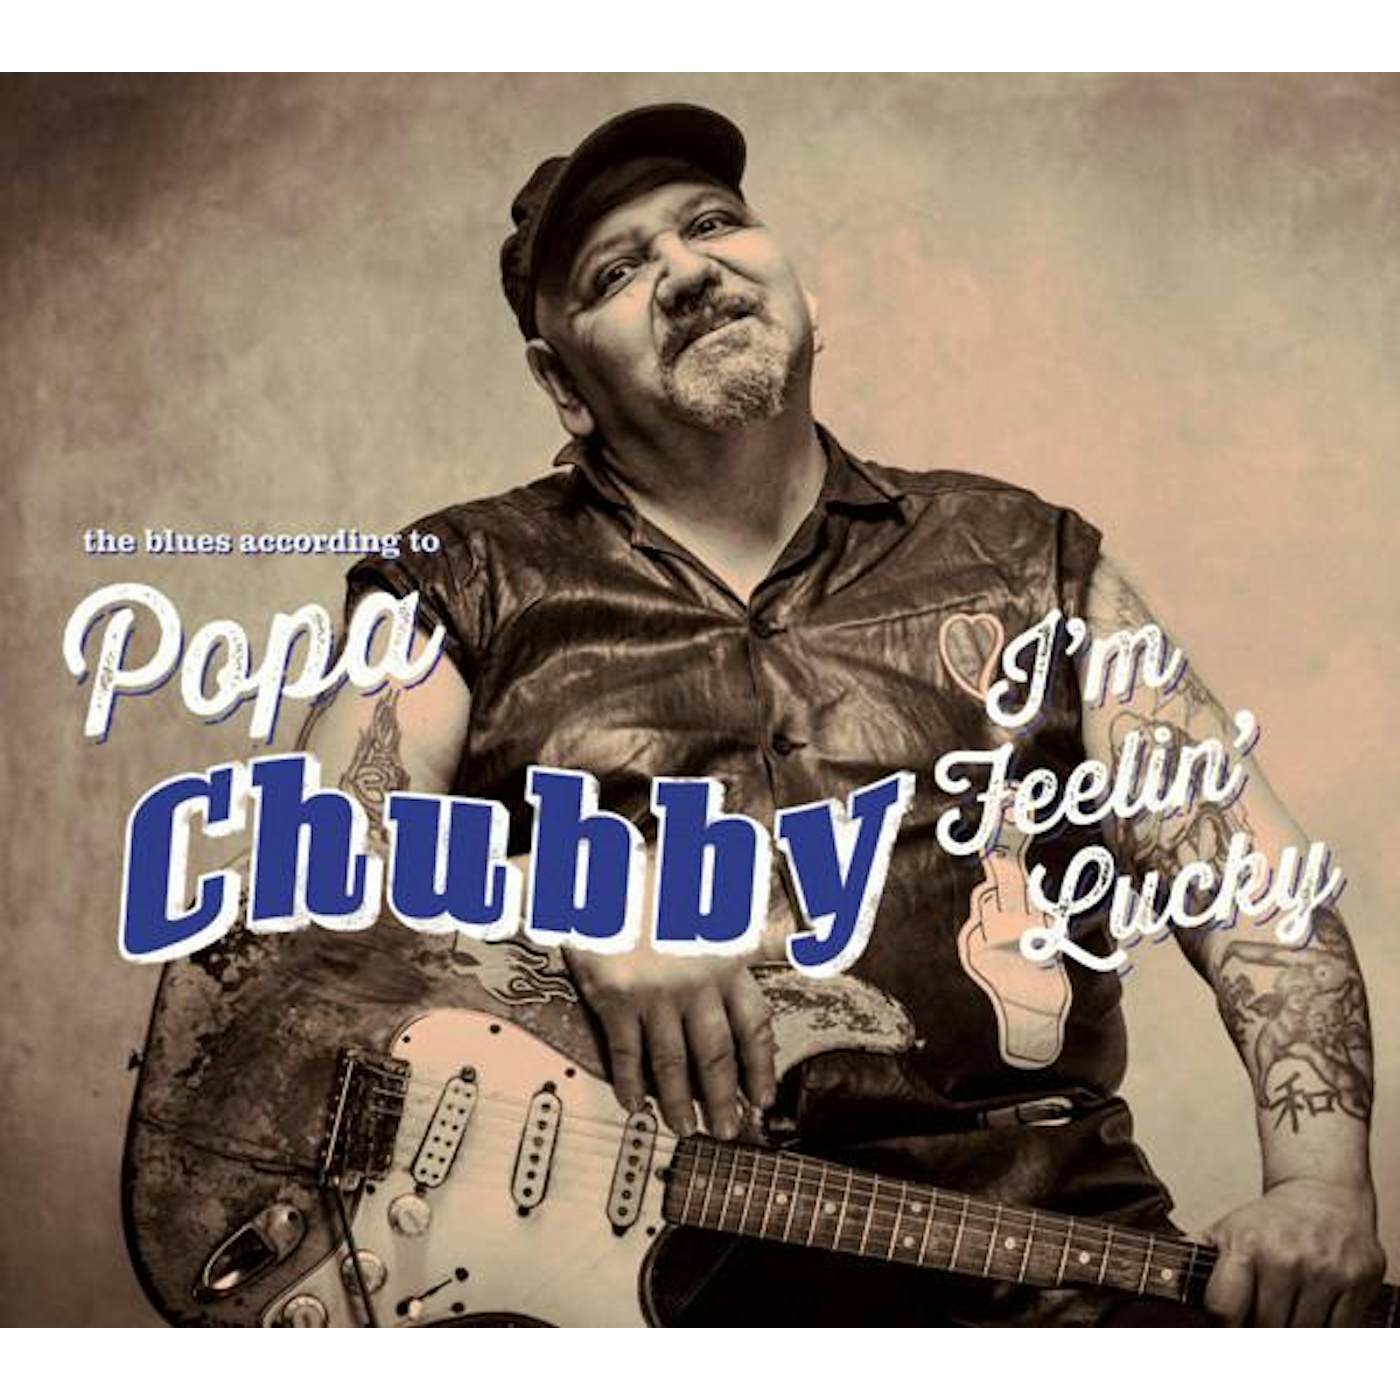 Popa Chubby I'M FEELIN' LUCKY CD